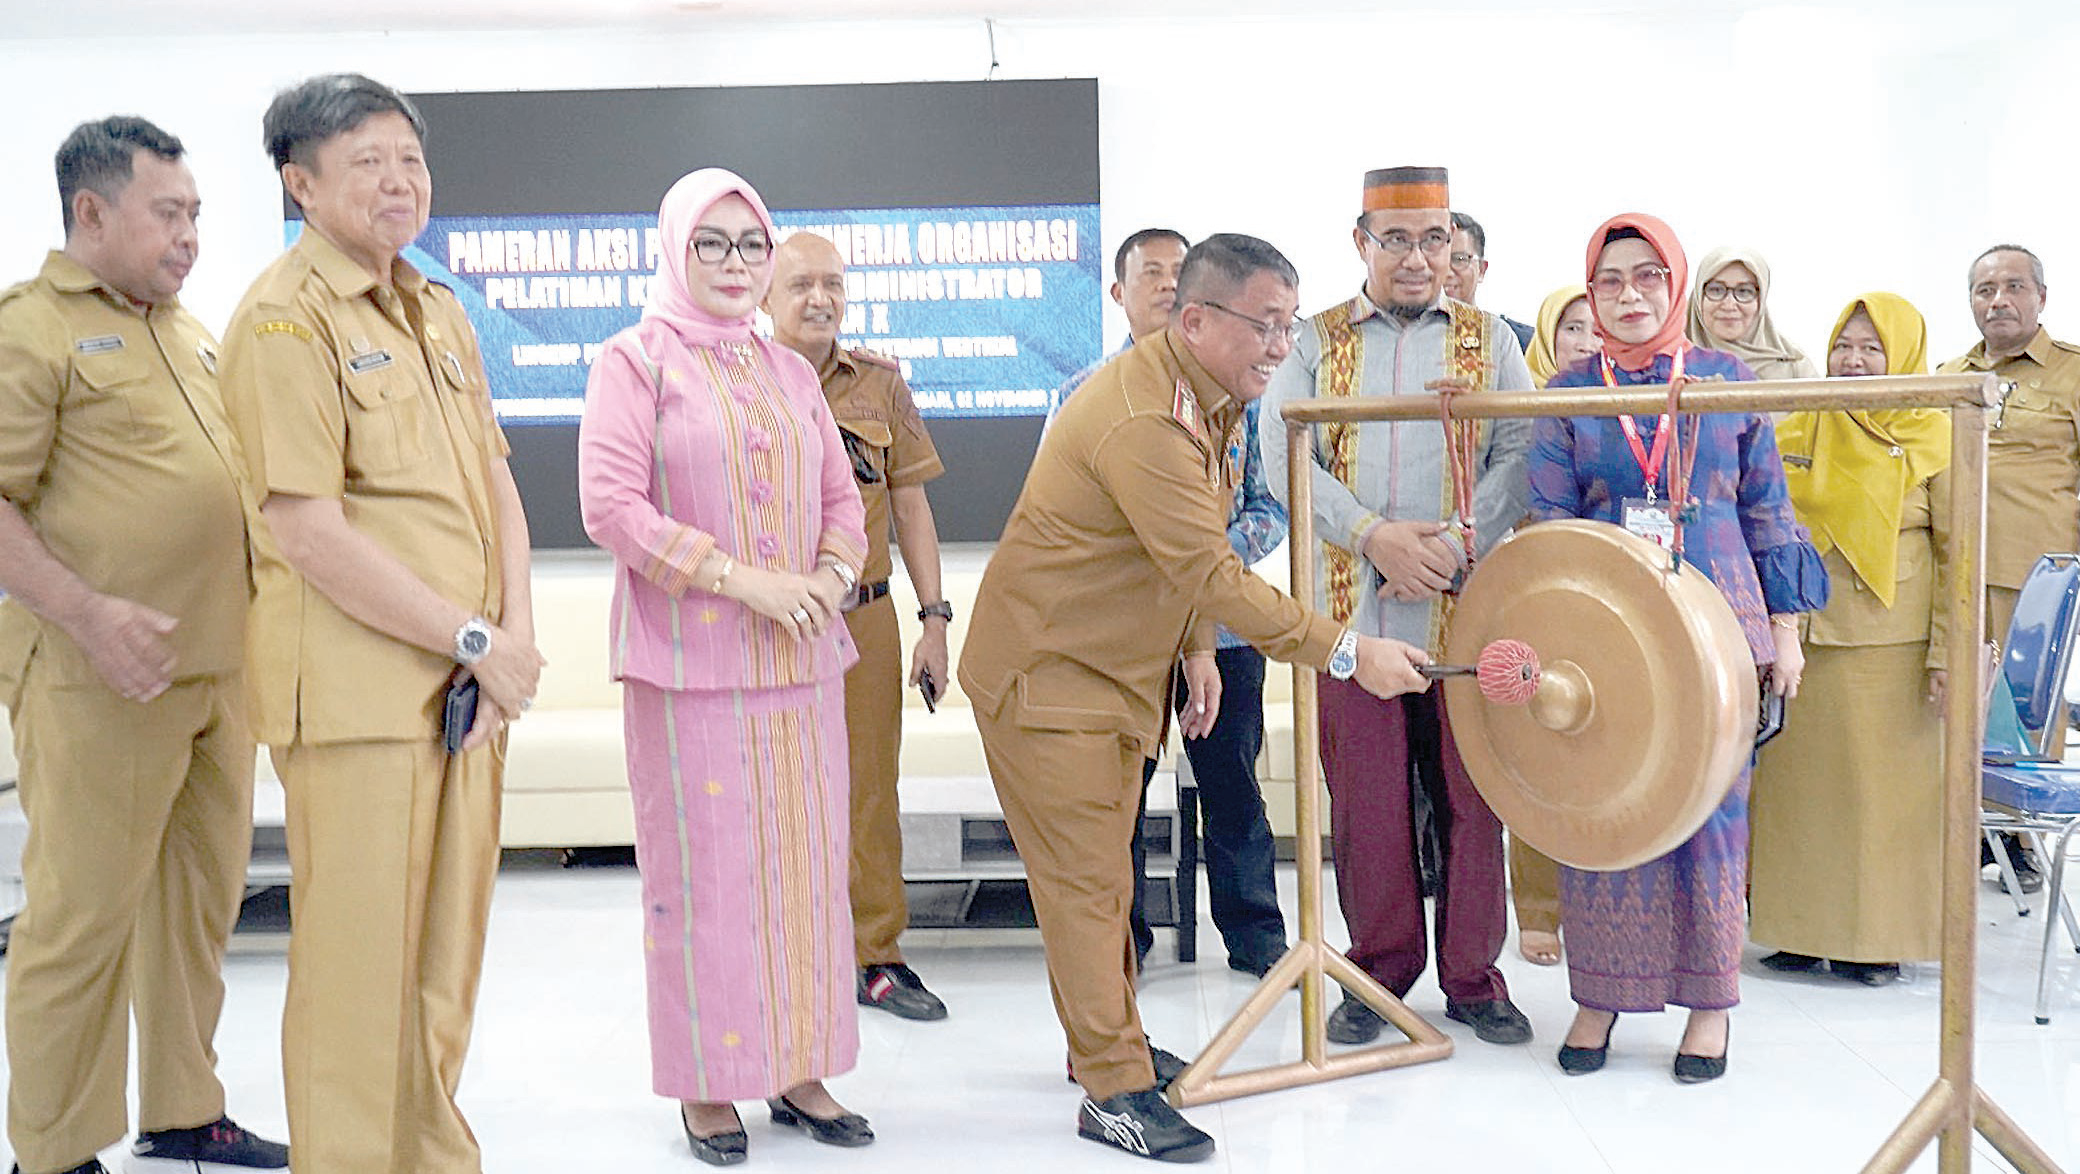 PAMERAN INOVASI DANKREATIVITAS : Kepala BPSDM Sultra Syahruddin Nurdin memukul gong tanda dibukanya pameran pameran aksi perubahan di kantor BPSDM Sultra kemarin. (KAMALUDDIN/KENDARI POS)